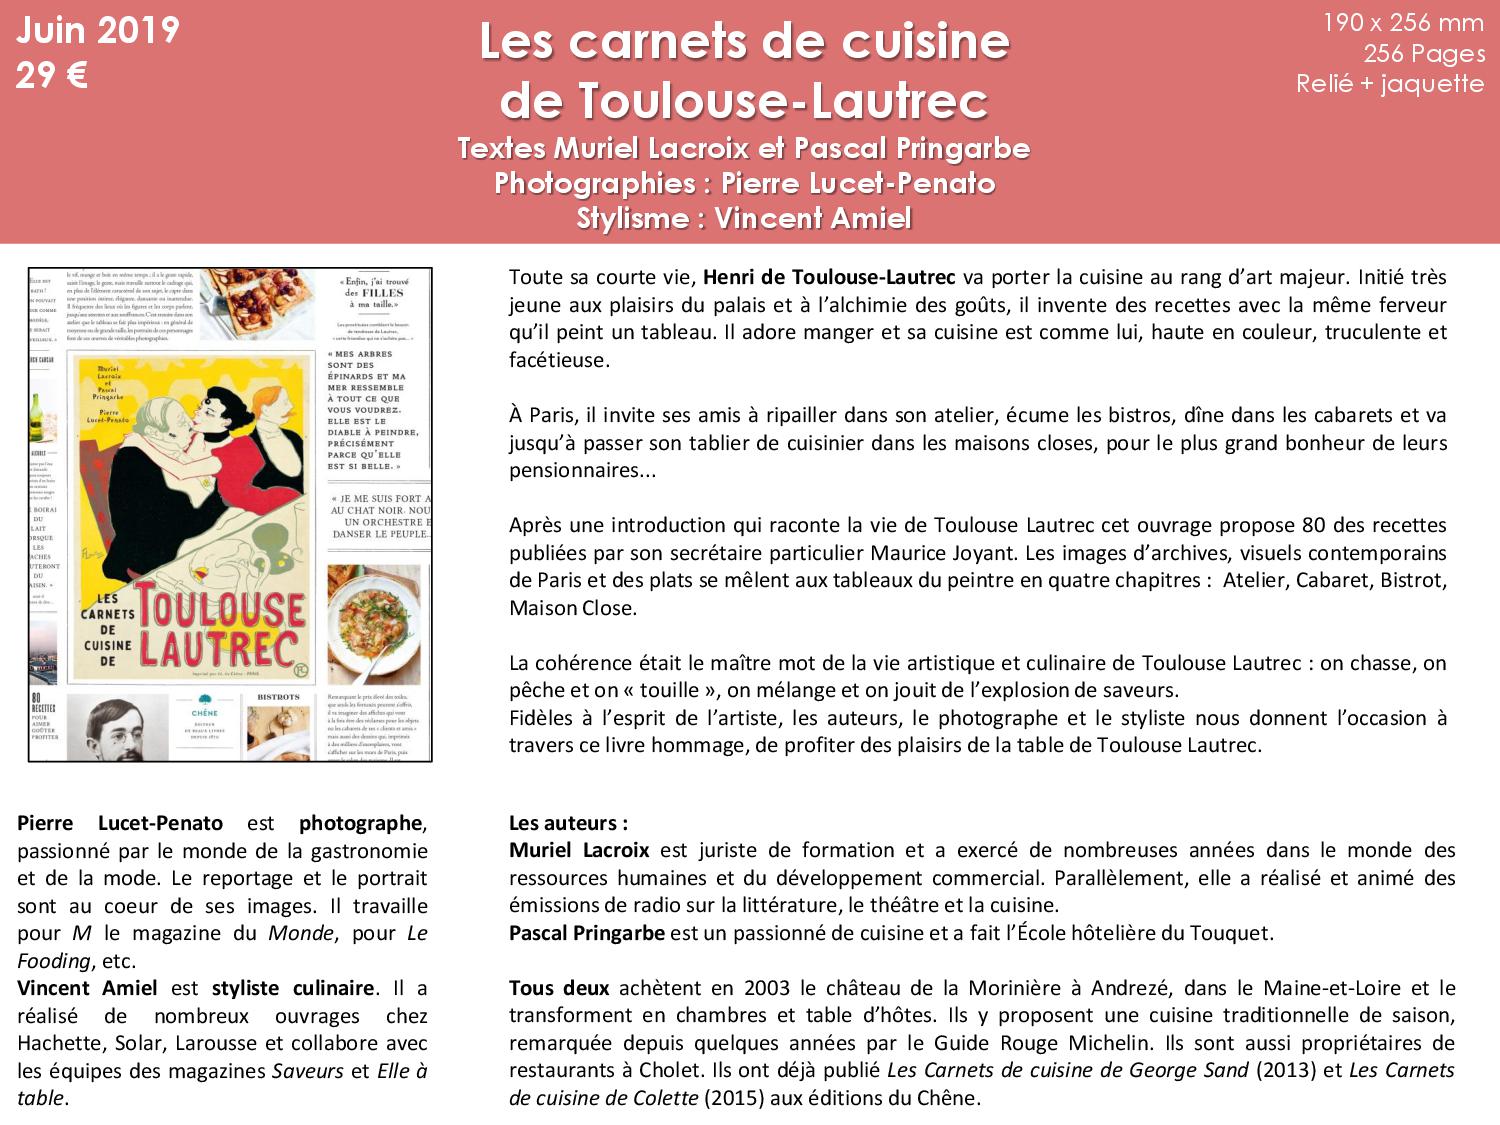 C_Users_Leevan_Documents_Stage - A transferer_Carnets de cuisine TL_Les carnets de cuisine de Toulouse Lautrec - Copie1